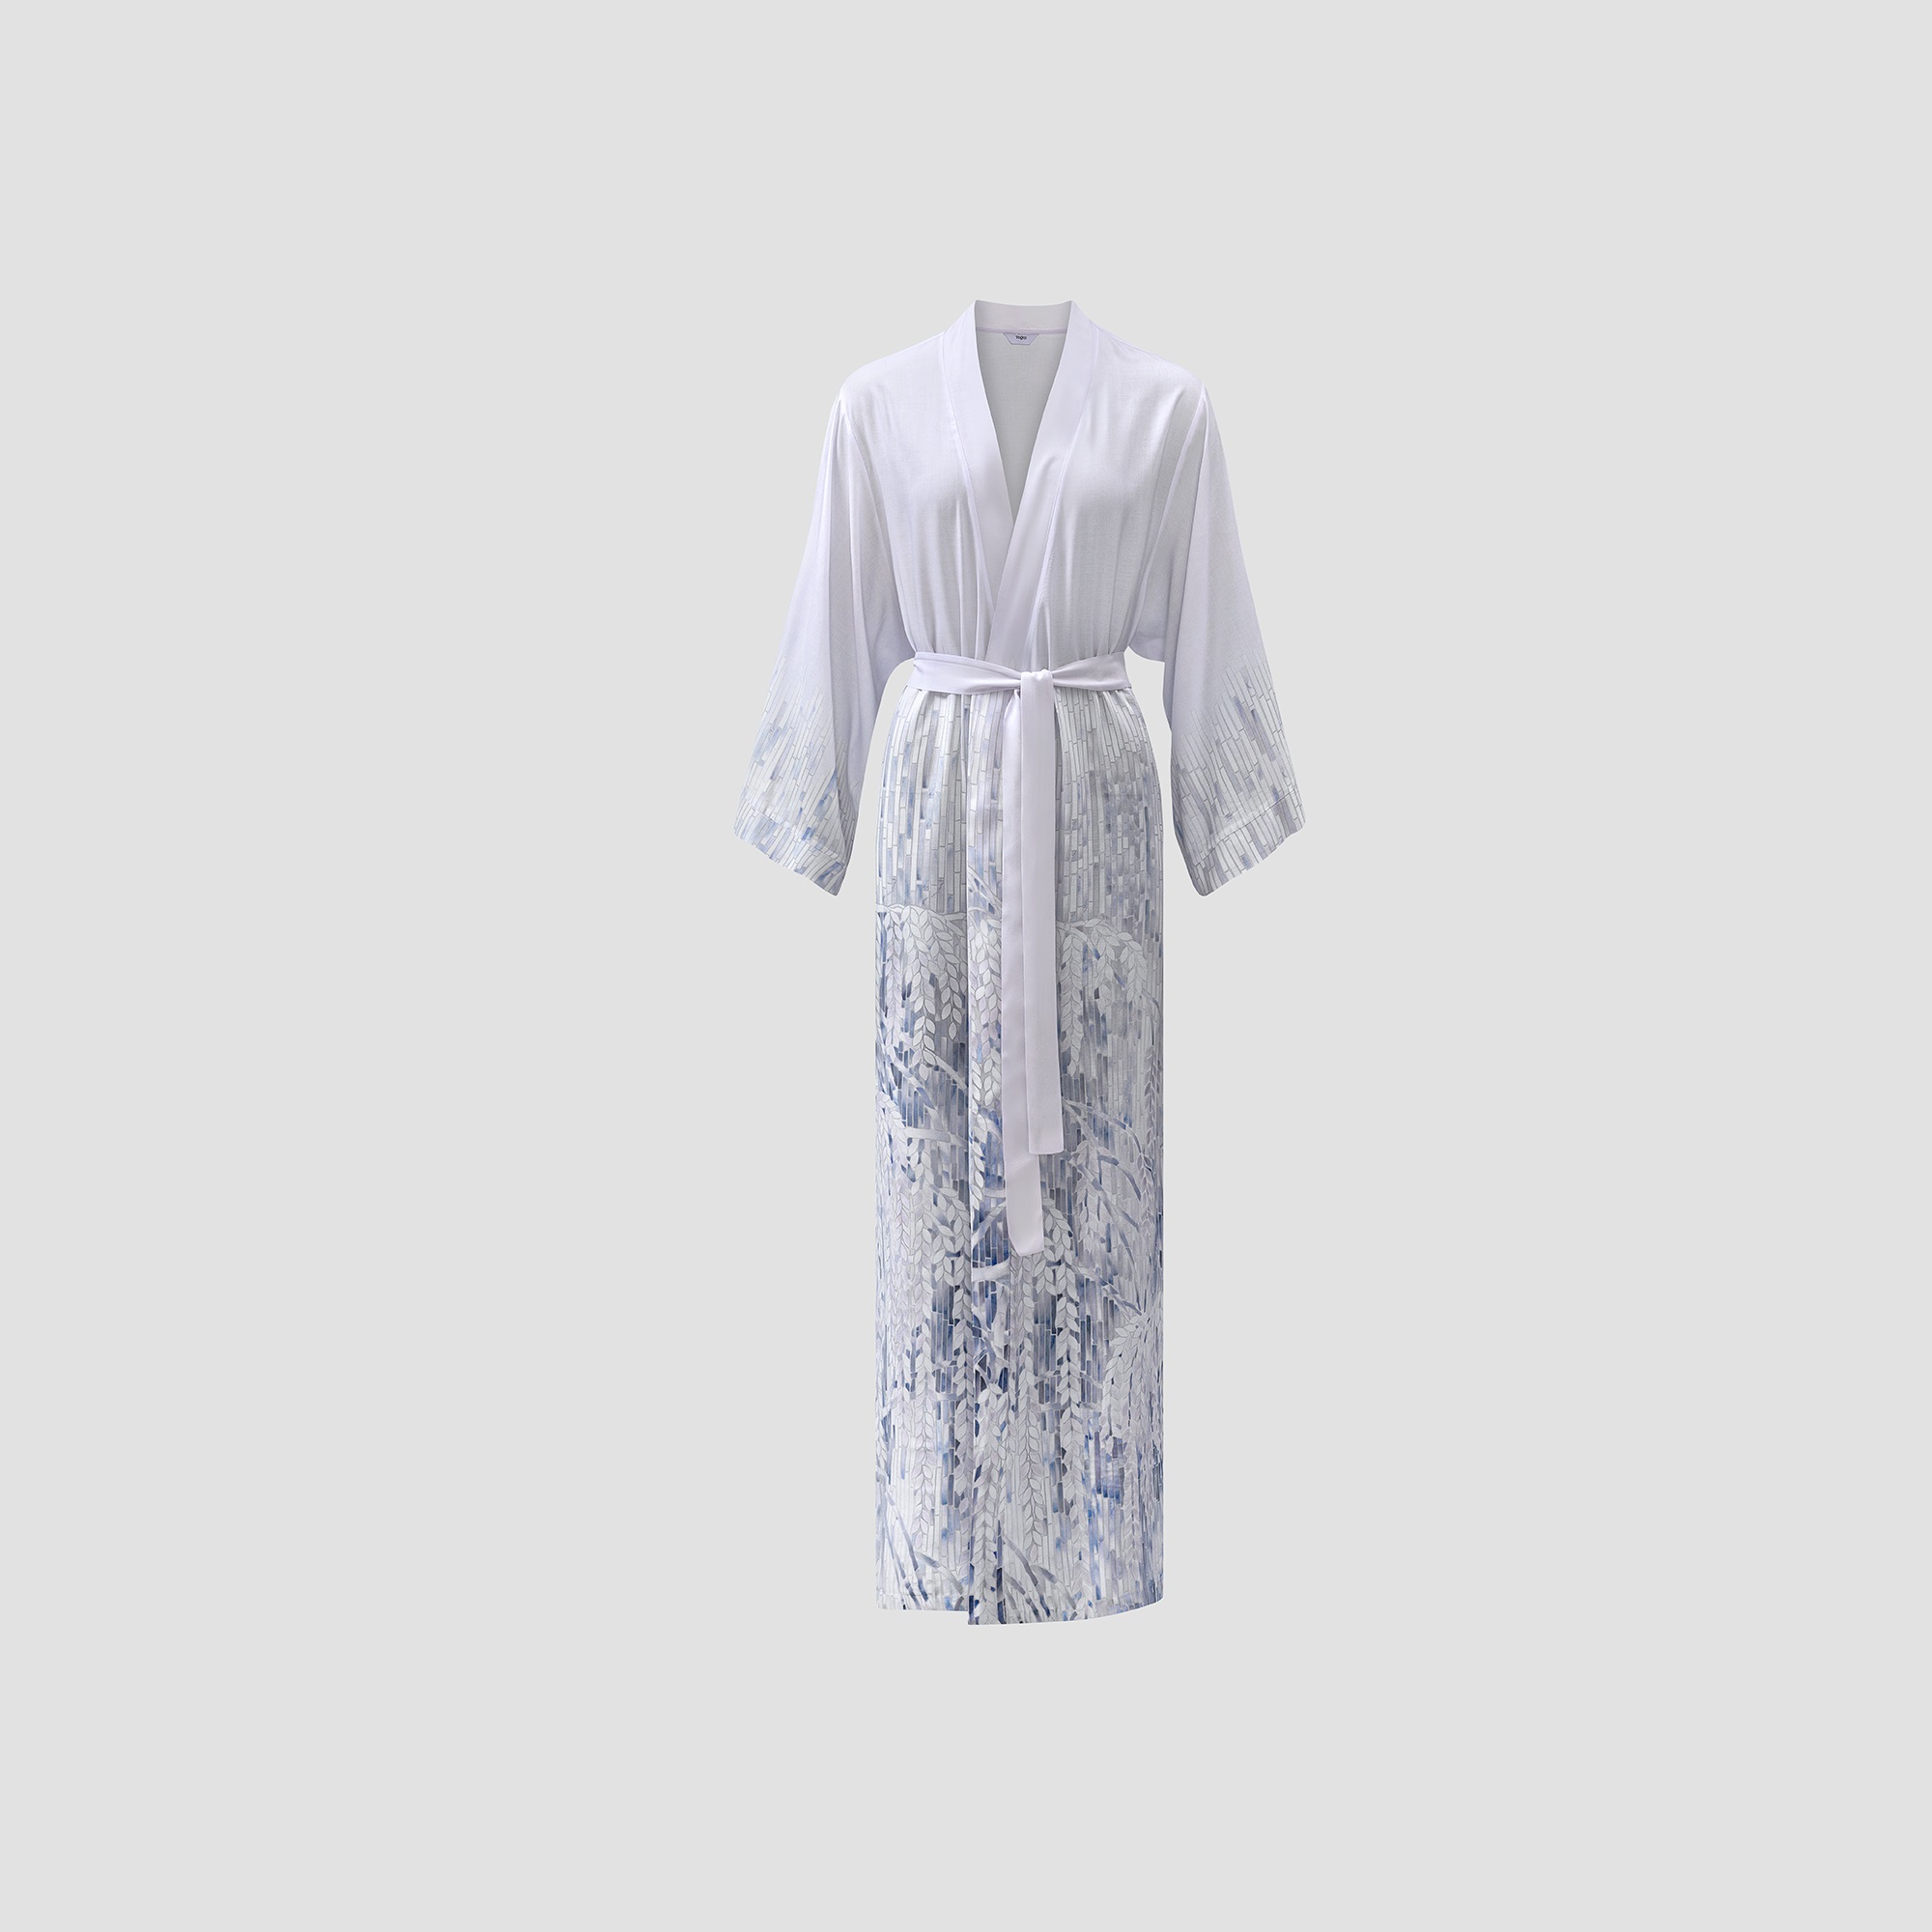 Кимоно Togas Вилонна бело-синее xl/50/, цвет белый, размер XL(50)